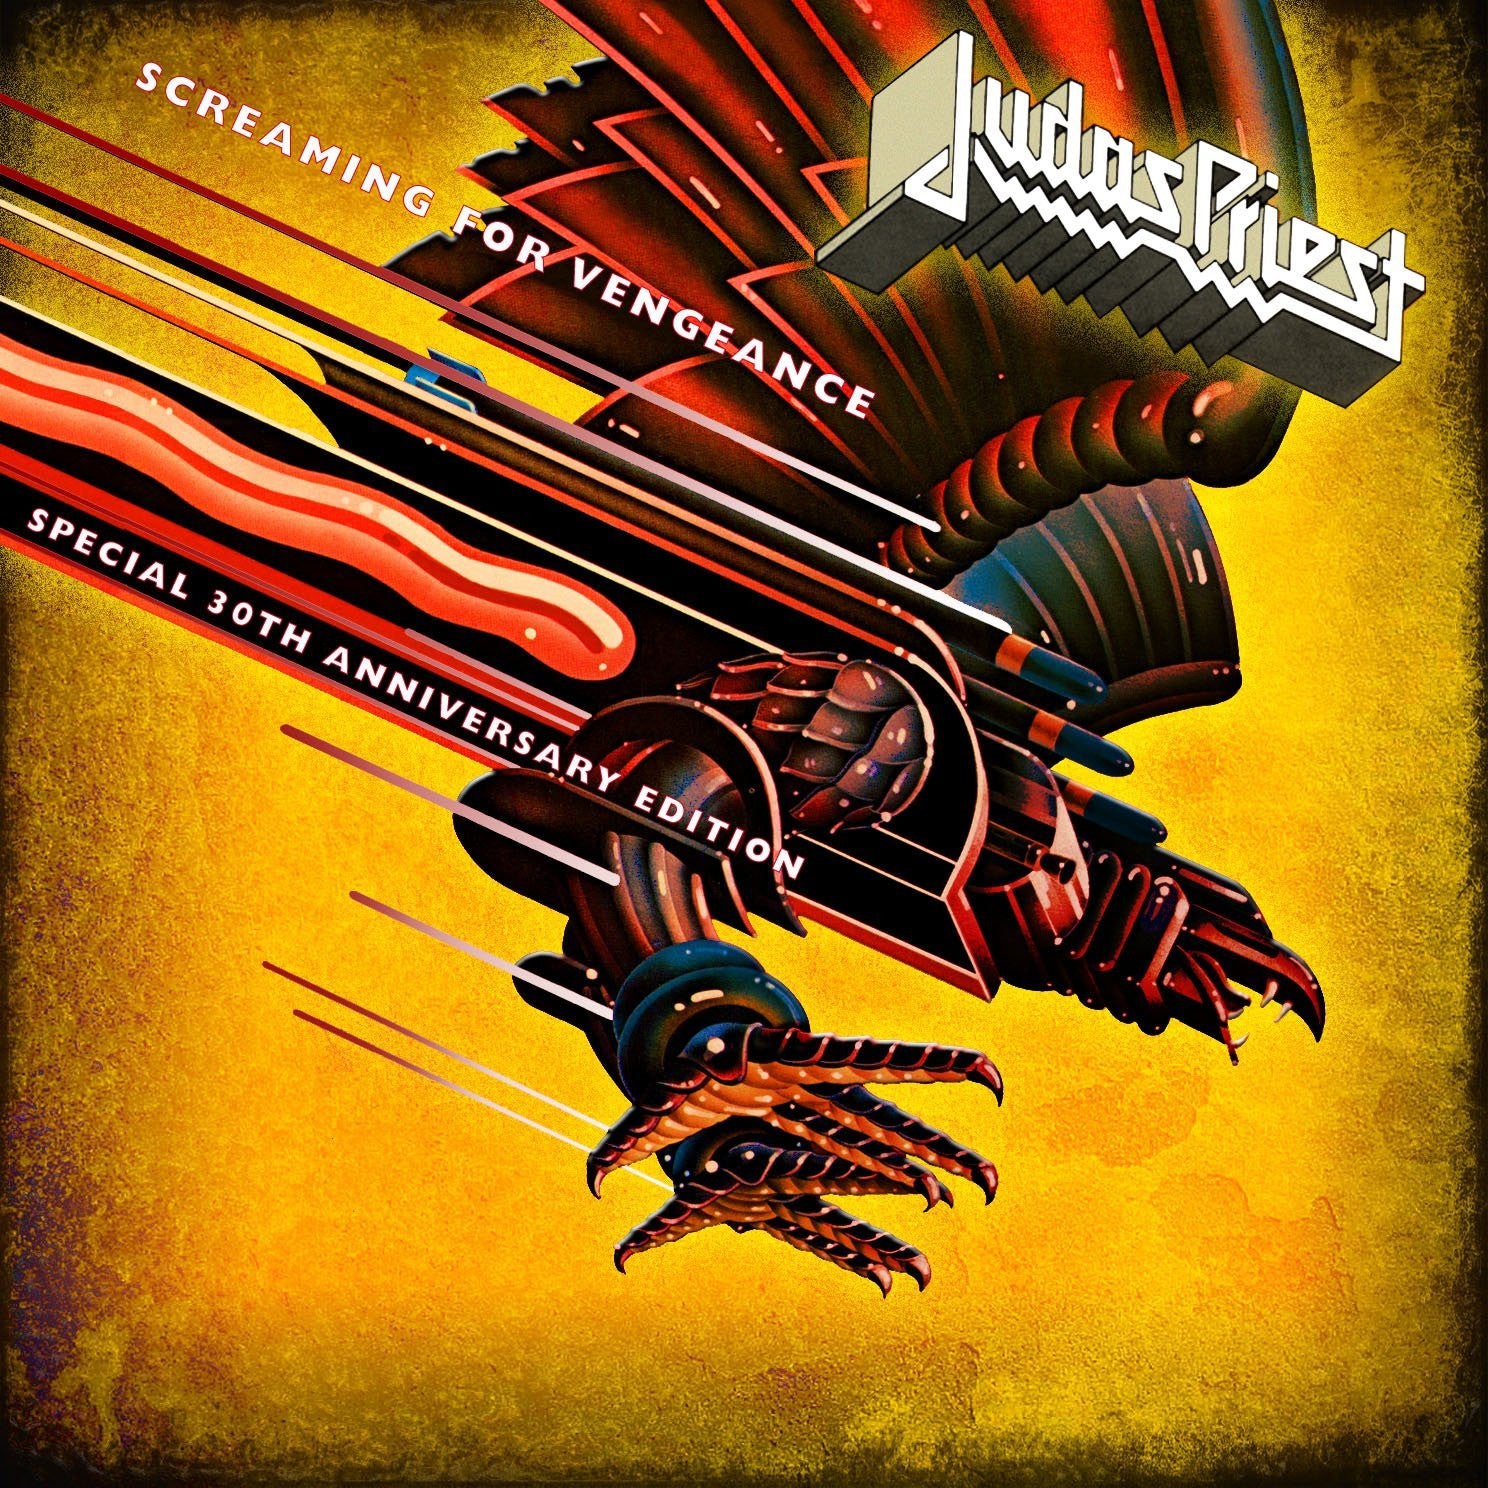 Judas Priest - Screaming For Vengeance CD